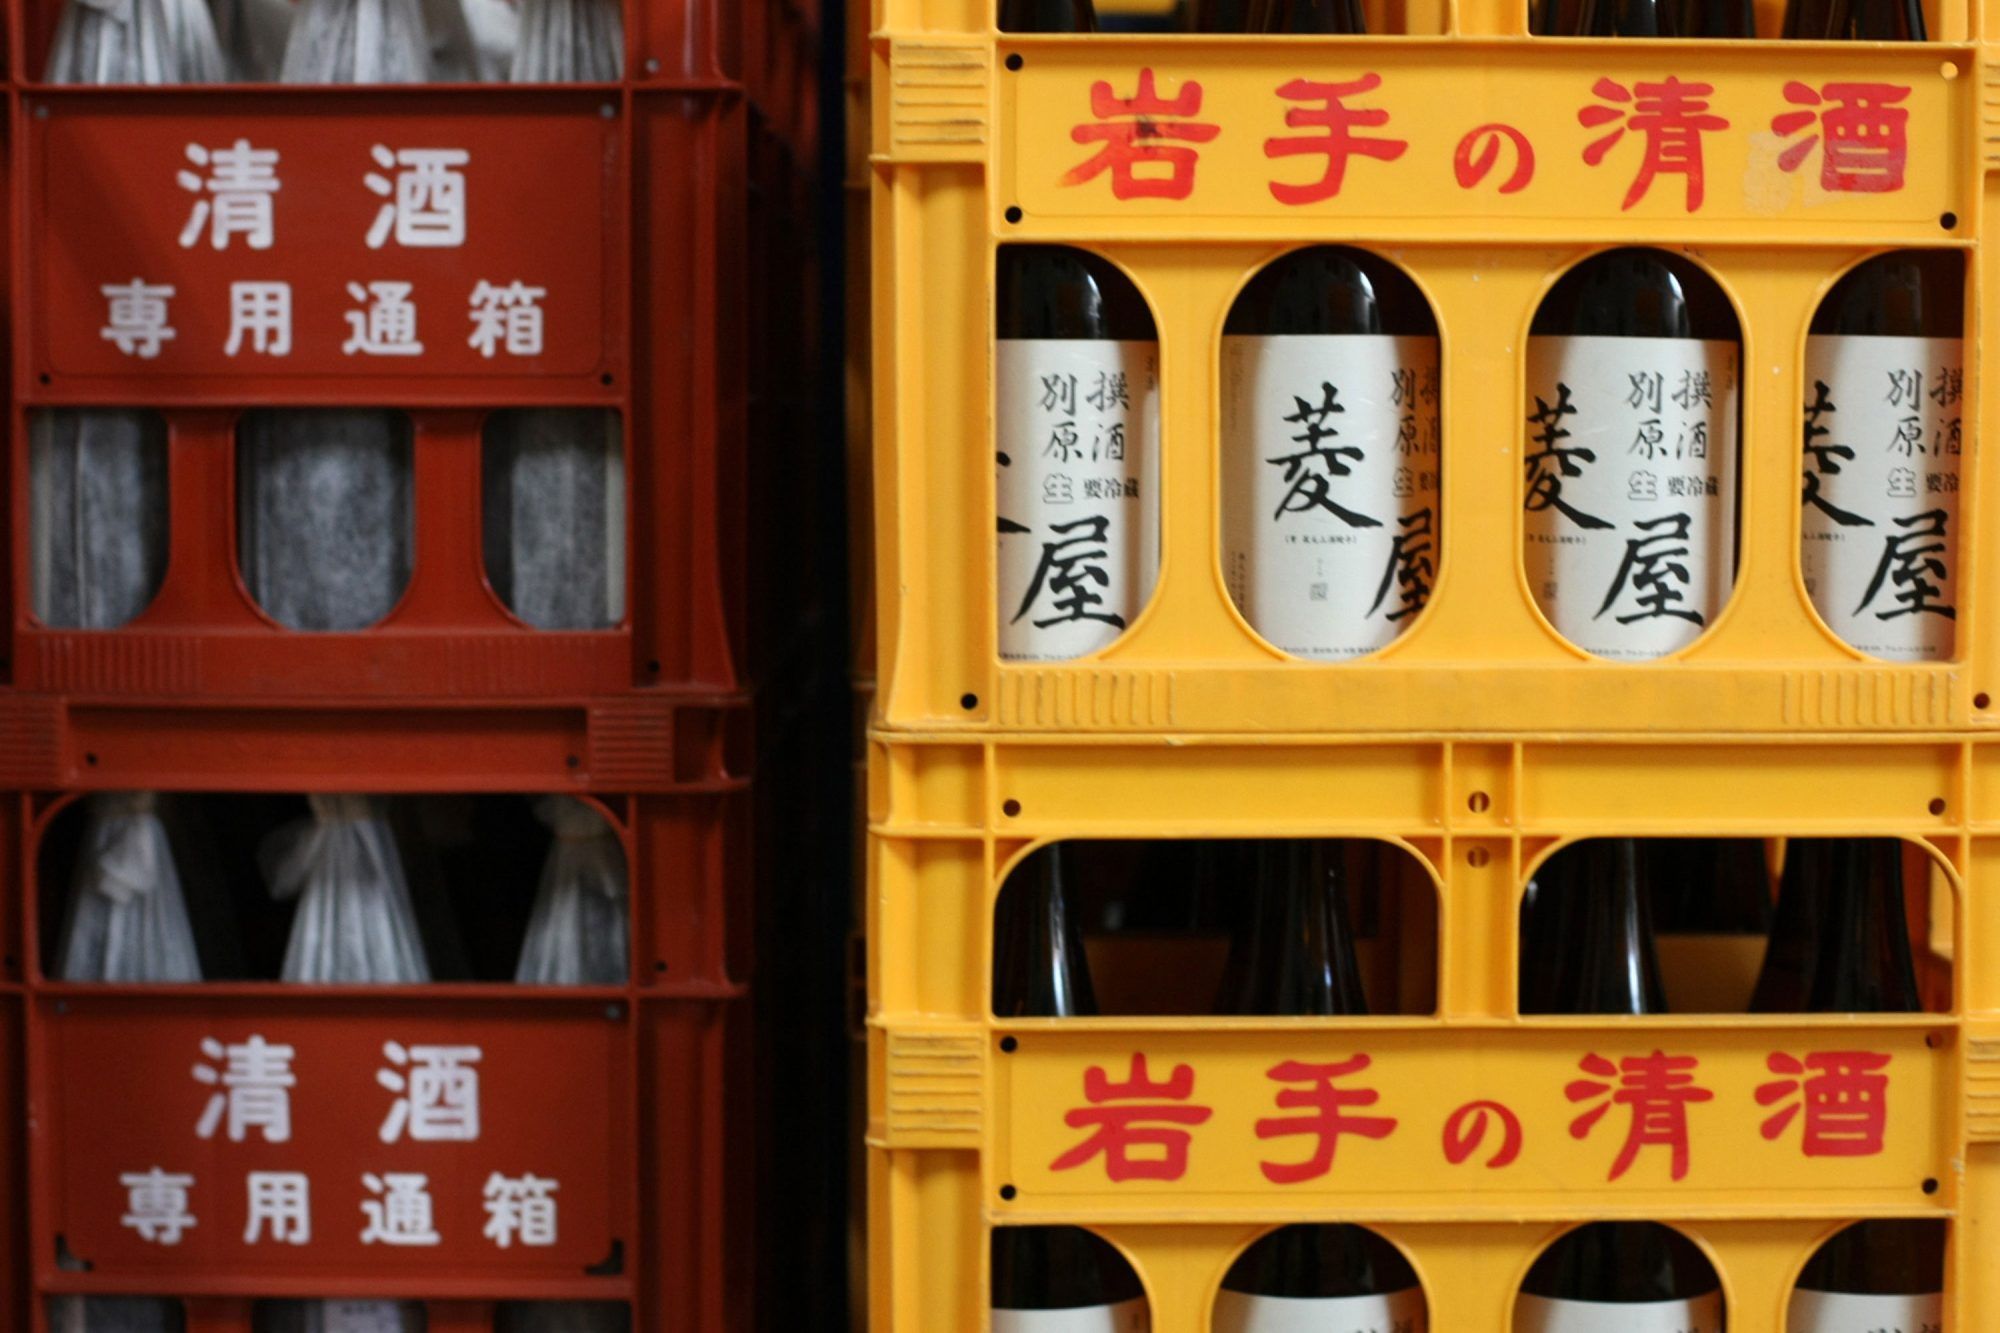 Crates containing bottles of sake sit stacked at the Hishiya Japanese Sake Brewery